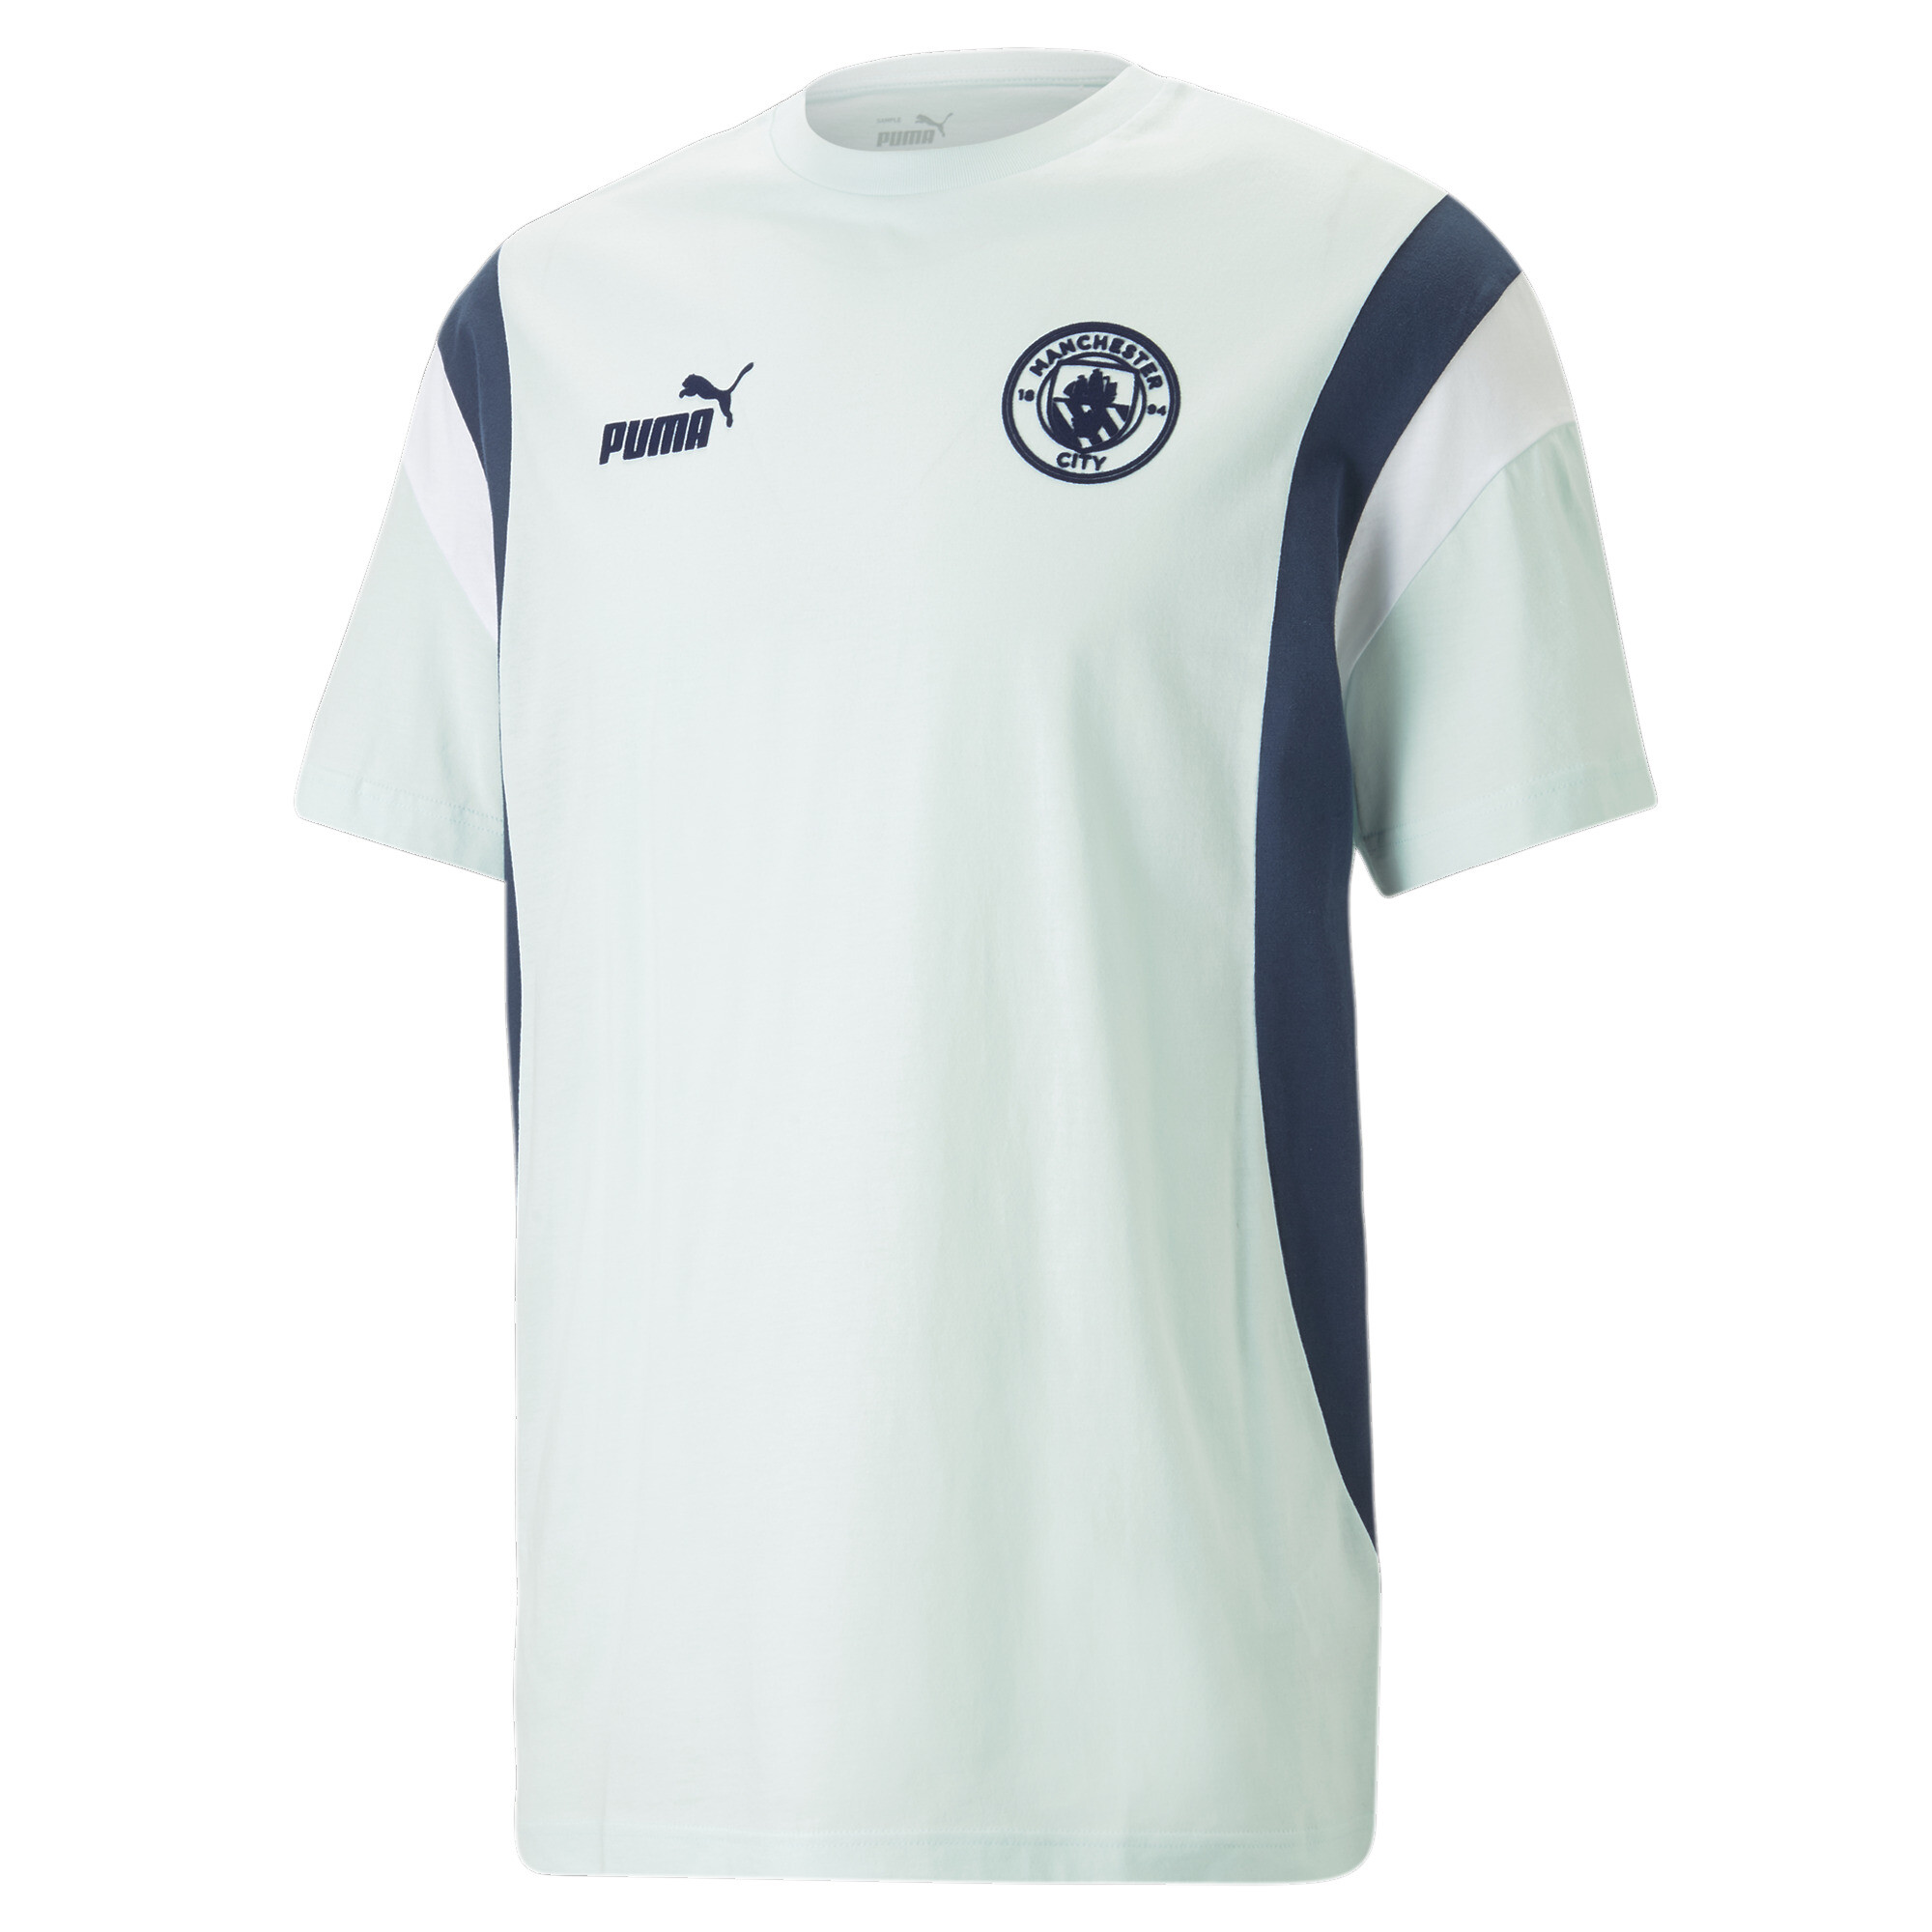 ＜プーマ公式通販＞ プーマ メンズ マンチェスター シティFC CL ウィナーズ Tシャツ メンズ Team Light Blue ｜PUMA.com